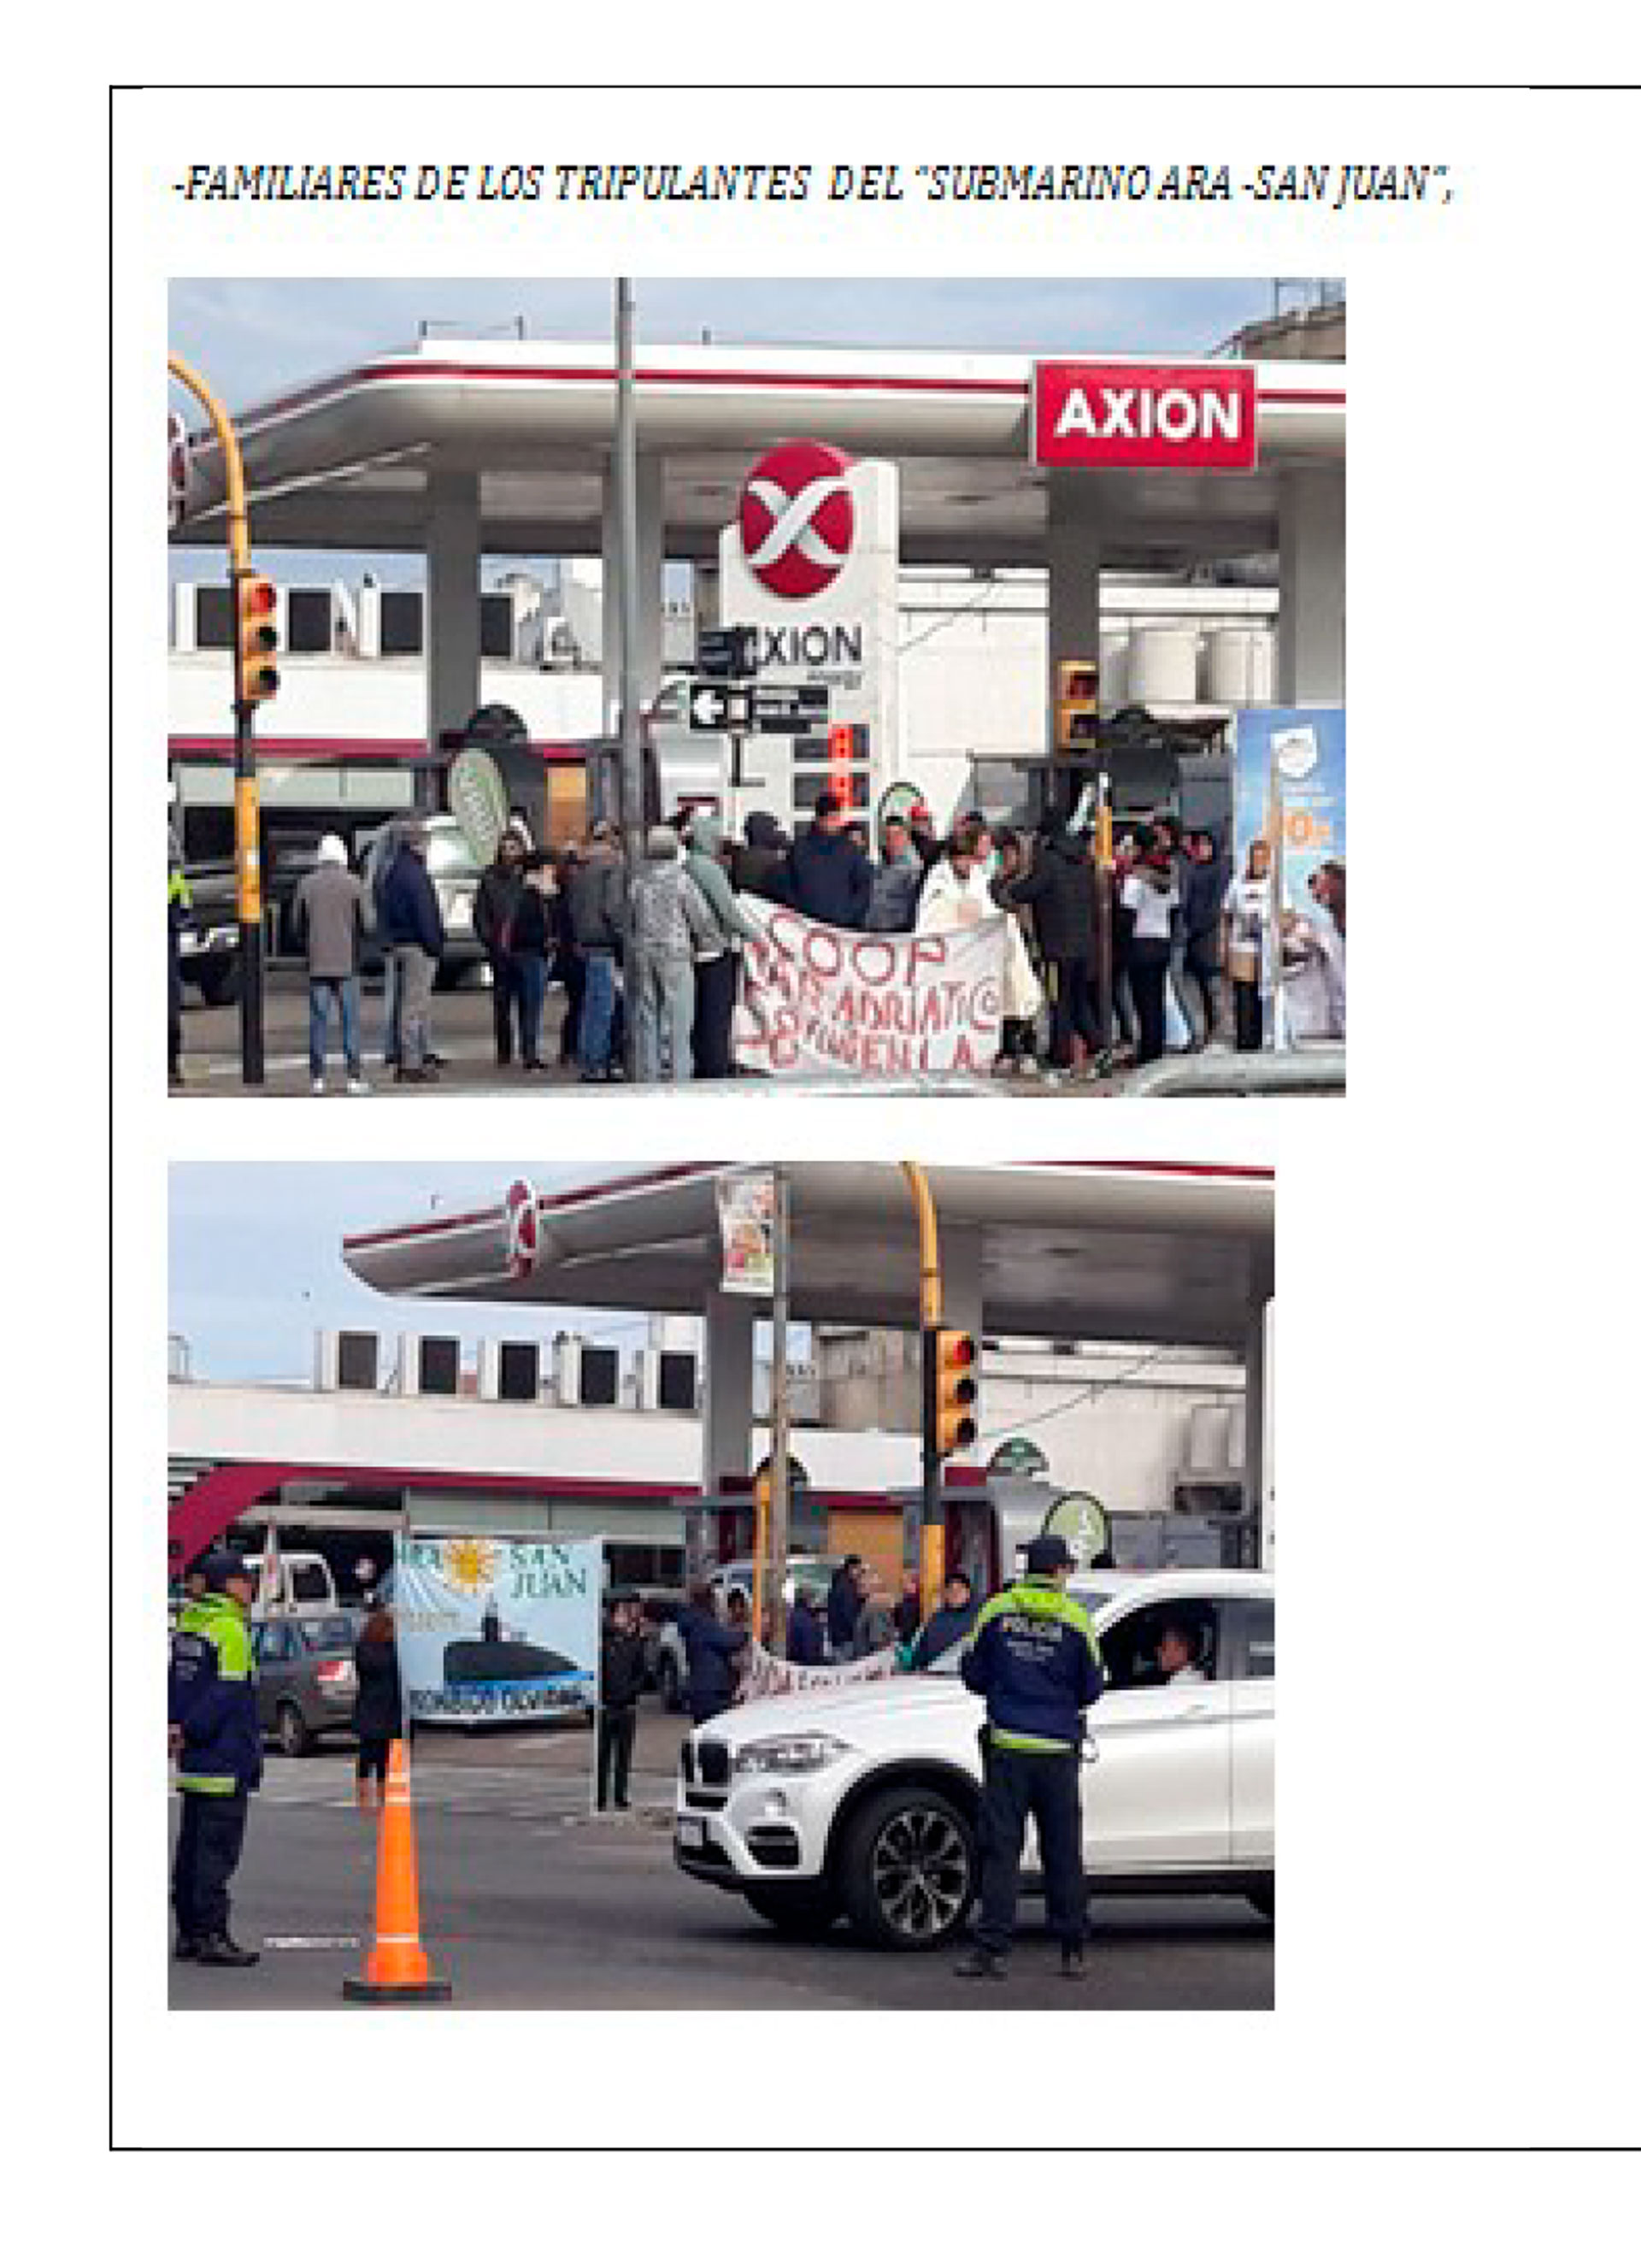 La foto y el informe de otro reclamo de familiares realizado en las calles de Mar del Plata.